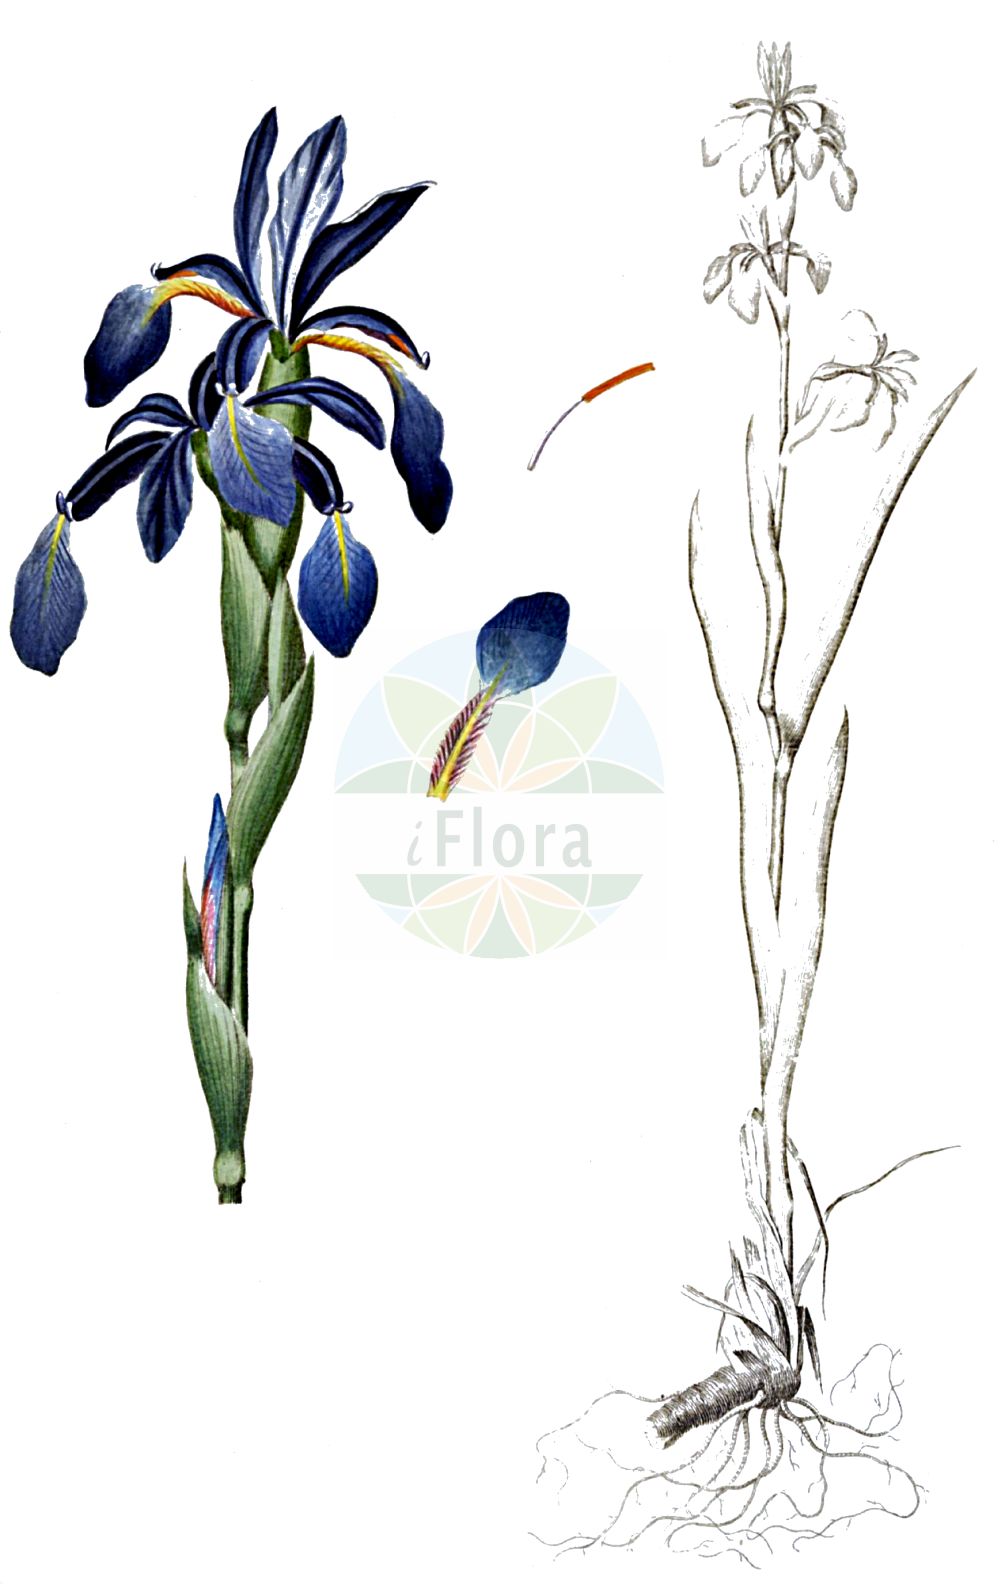 Historische Abbildung von Iris spuria (Salzwiesen-Schwertlilie - Blue Iris). Das Bild zeigt Blatt, Bluete, Frucht und Same. ---- Historical Drawing of Iris spuria (Salzwiesen-Schwertlilie - Blue Iris). The image is showing leaf, flower, fruit and seed.(Iris spuria,Salzwiesen-Schwertlilie,Blue Iris,Chamaeiris spuria,Iris spuria,Limniris spuria,Xiphion spurium,Xyridion spurium,Salzwiesen-Schwertlilie,Sumpfwiesen-Schwertlilie,Wiesen-Schwertlilie,Blue Iris,Seashore Iris,Iris,Schwertlilie,Iris,Iridaceae,Schwertliliengewächse,Iris family,Blatt,Bluete,Frucht,Same,leaf,flower,fruit,seed,Oeder (1761-1883))